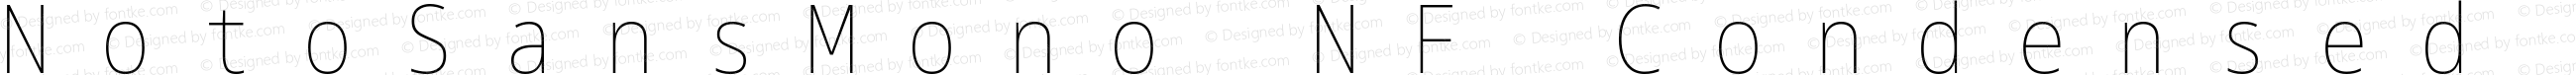 Noto Sans Mono Condensed Thin Nerd Font Complete Mono Windows Compatible